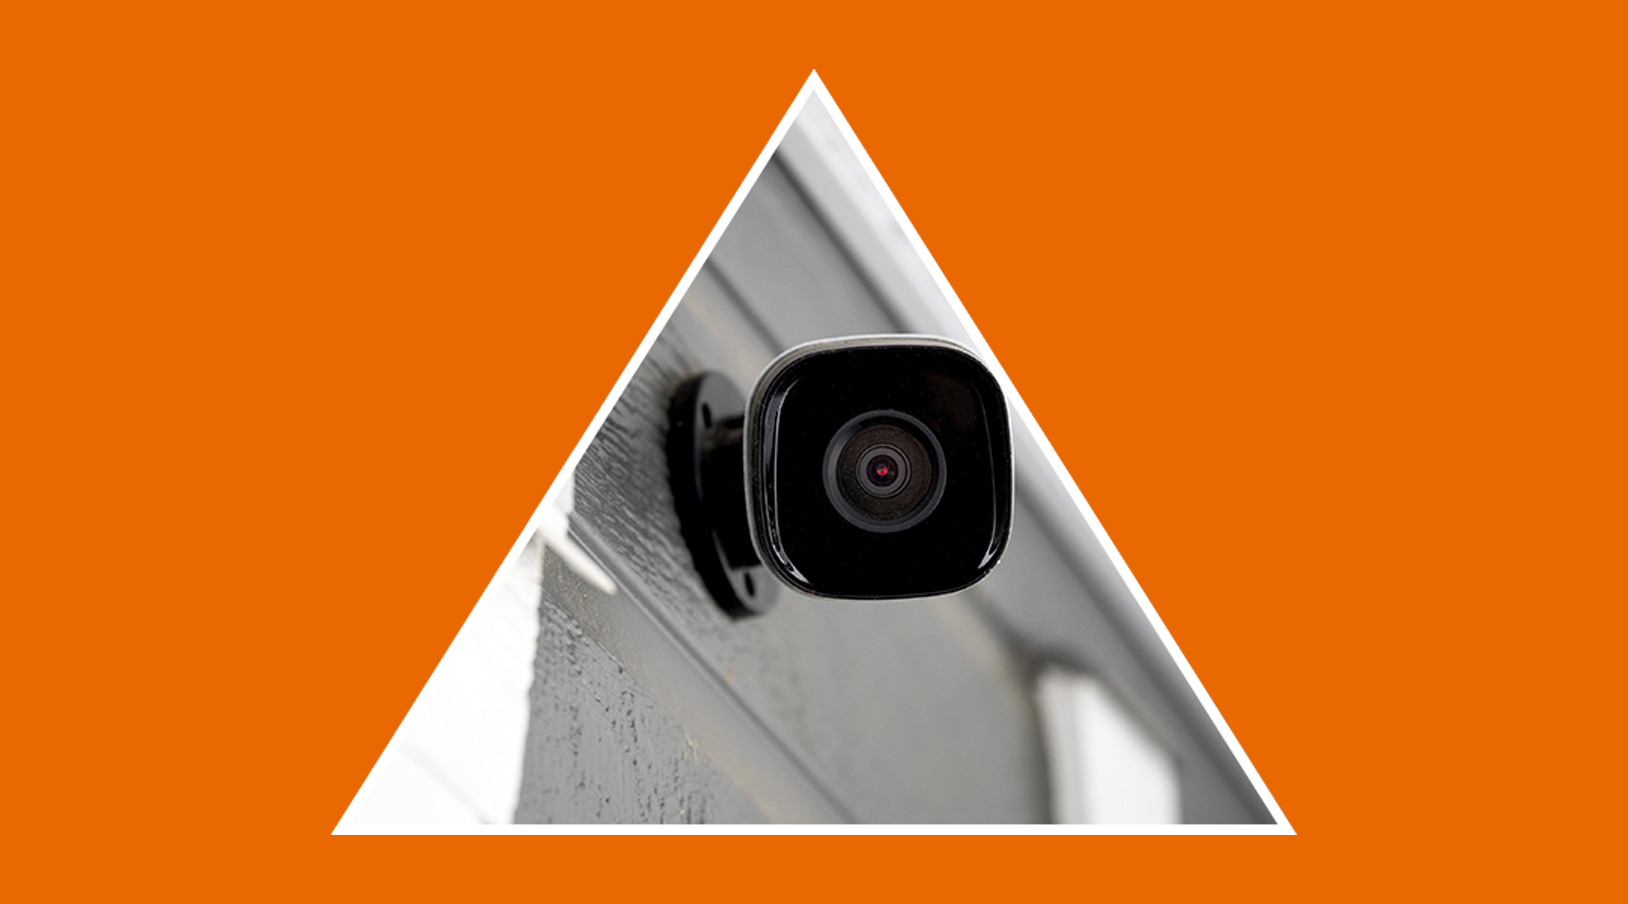 Cámaras de vigilancia: cómo solicitar una grabación de seguridad